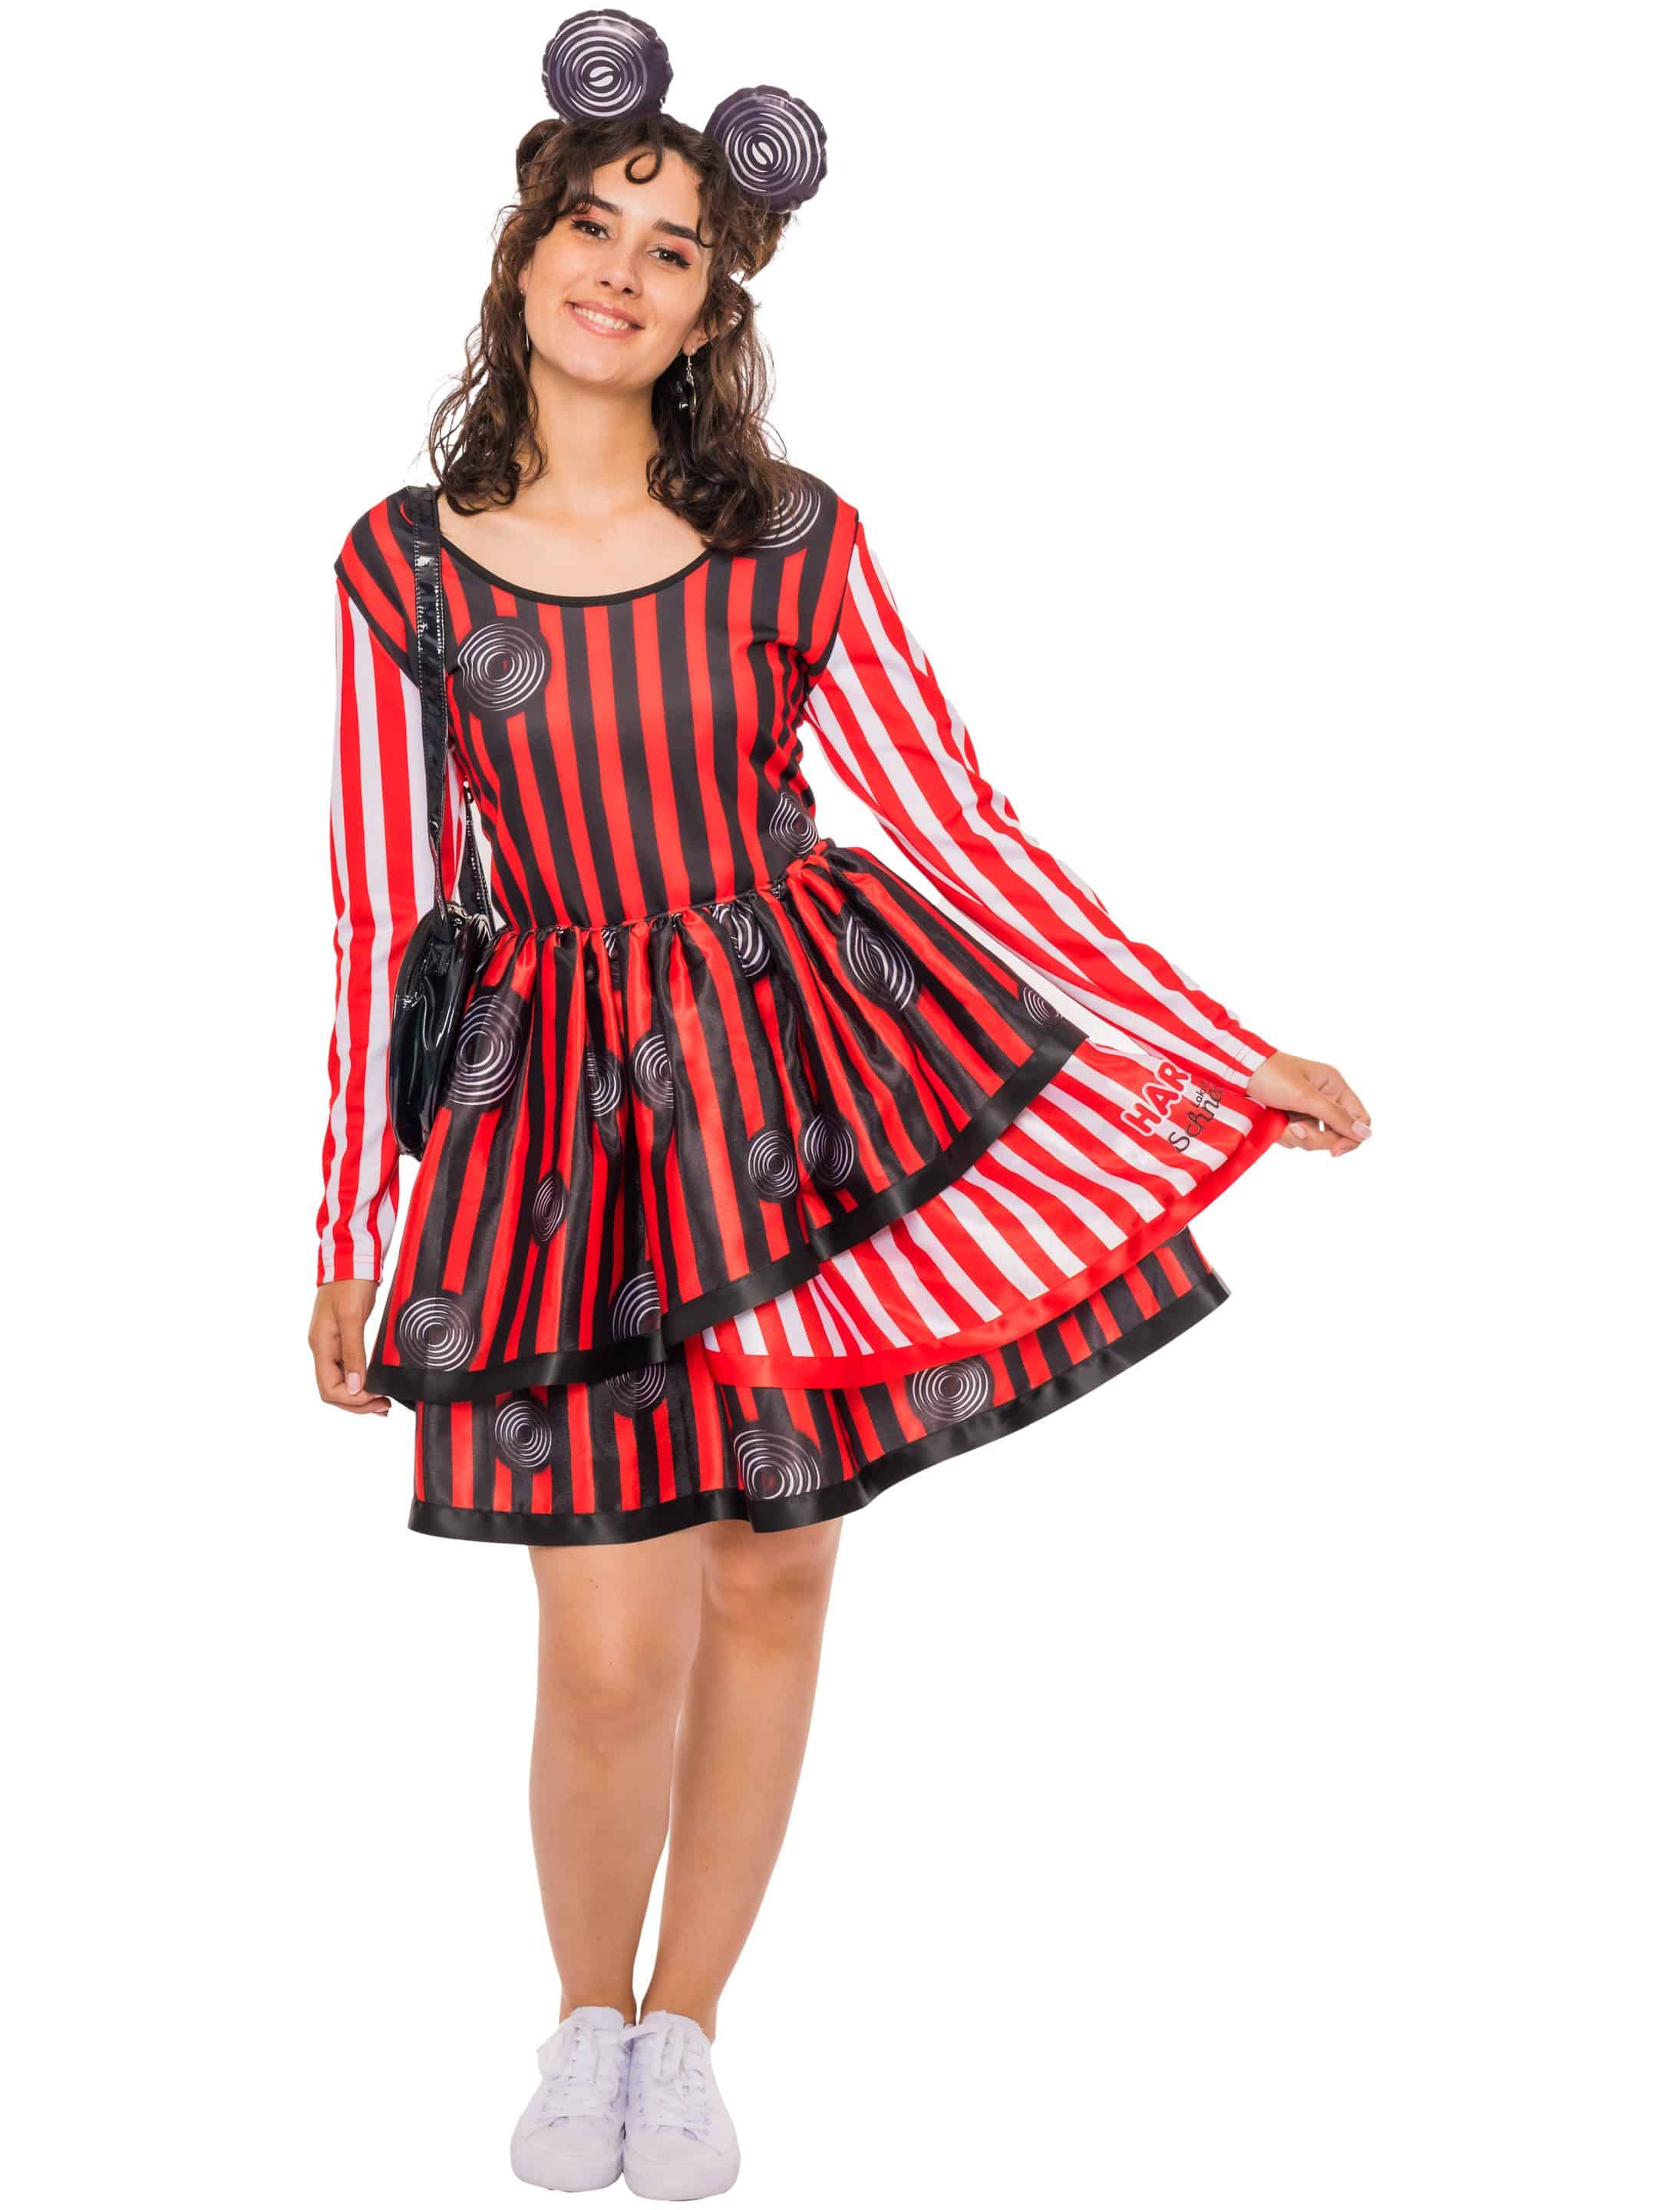 Kleid HARIBO Lakritz Schnecken Damen schwarz/weiß/rot 3XL